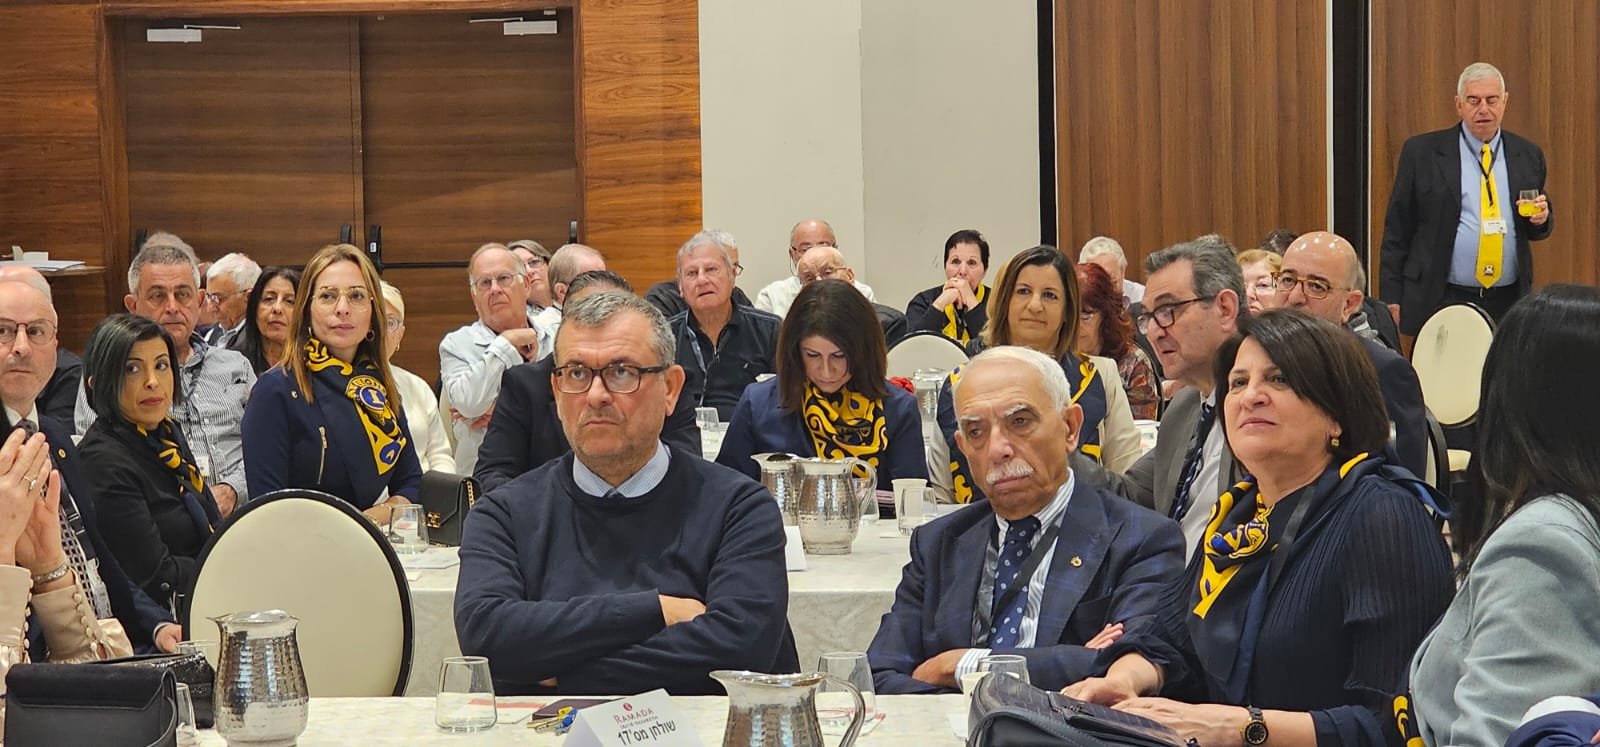 مدينة الناصرة تستضيف المؤتمر الـ 64 لنوادي الليونز في اسرائيل وانتخاب حسام سلمان رئيسا جديدا-1